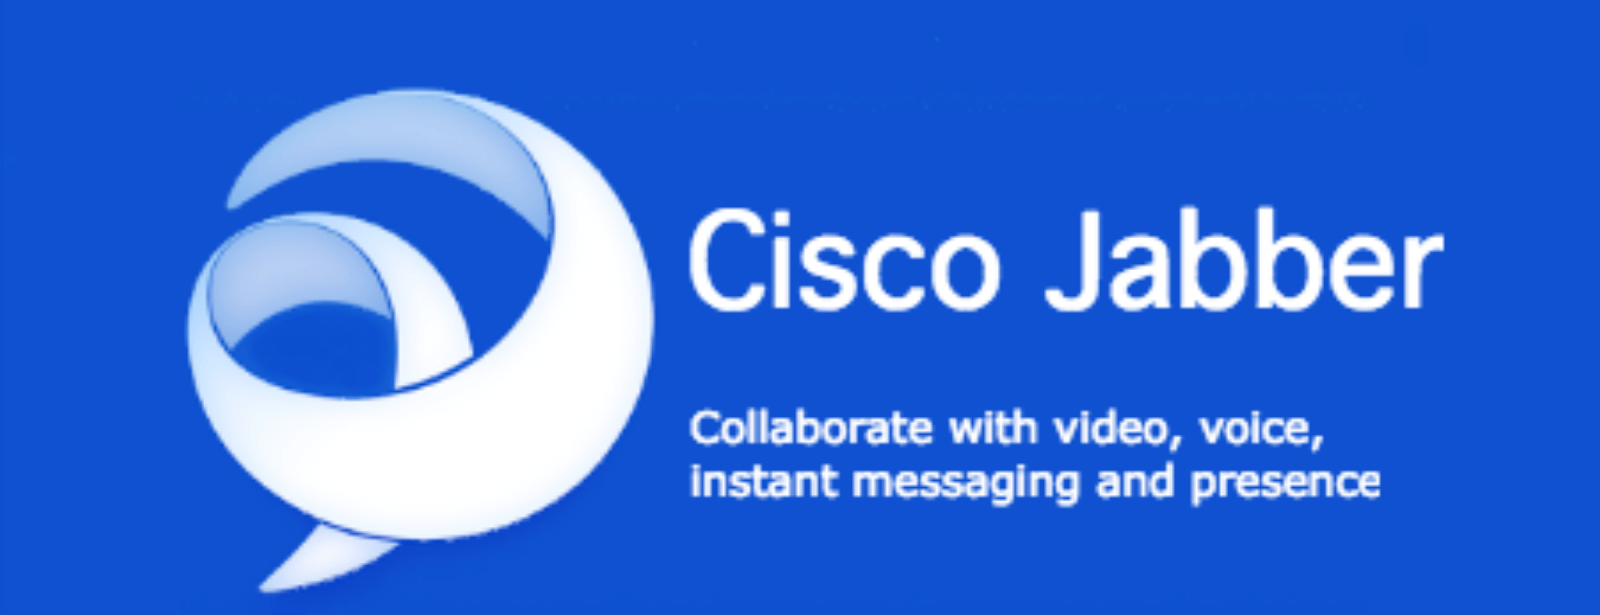 Cisco Jabber Logo - What's new in Cisco Jabber 12.5